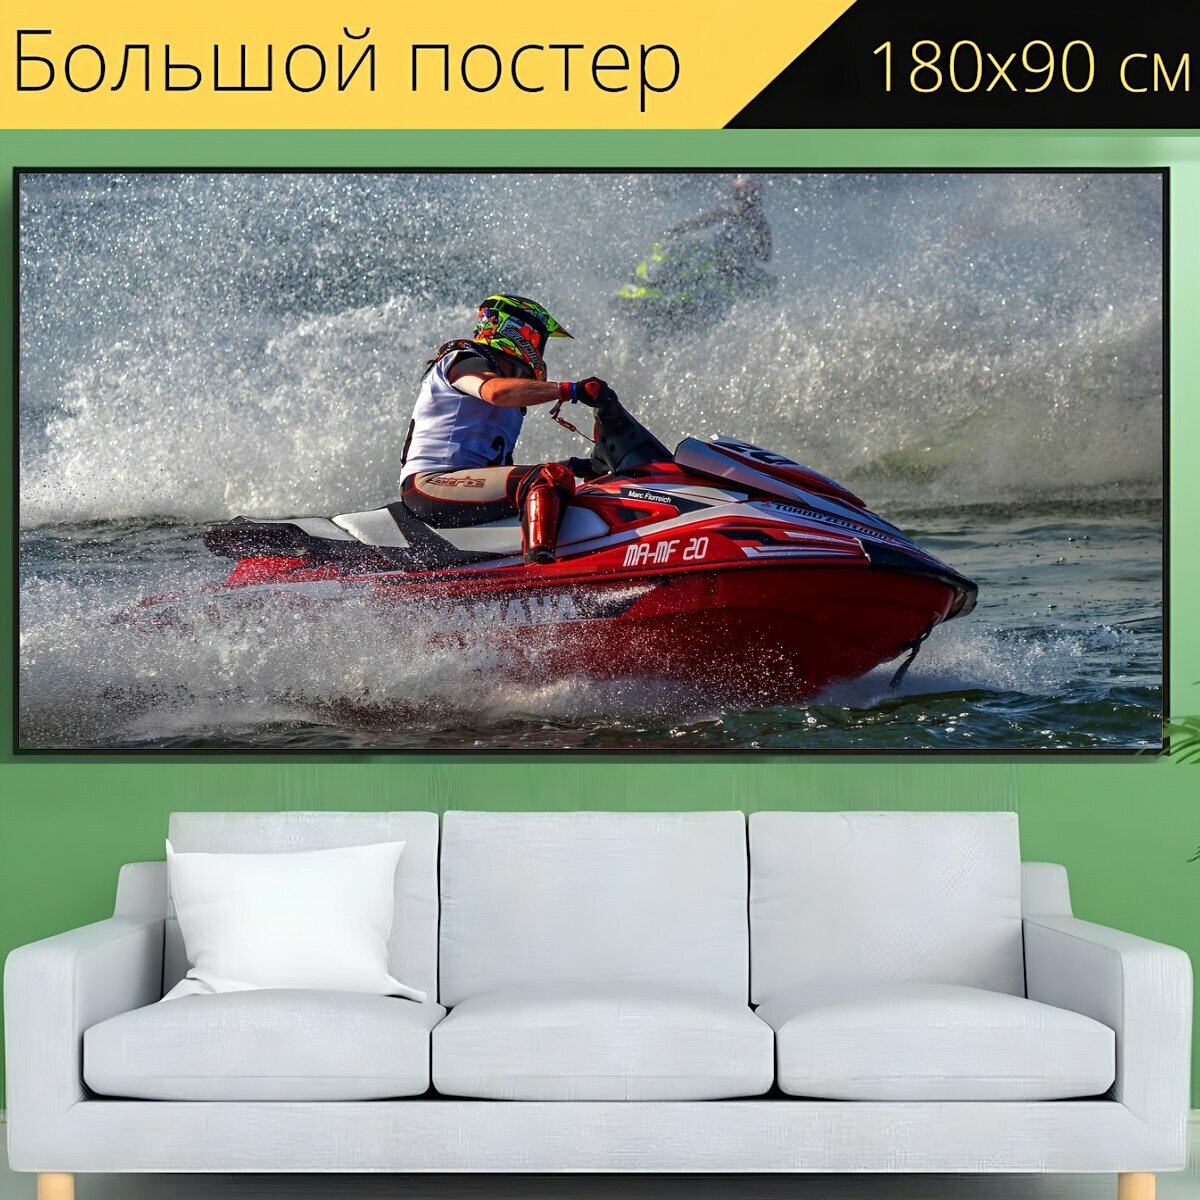 Большой постер "Водные лыжи, гидроцикл гонки, моторная лодка гонки" 180 x 90 см. для интерьера